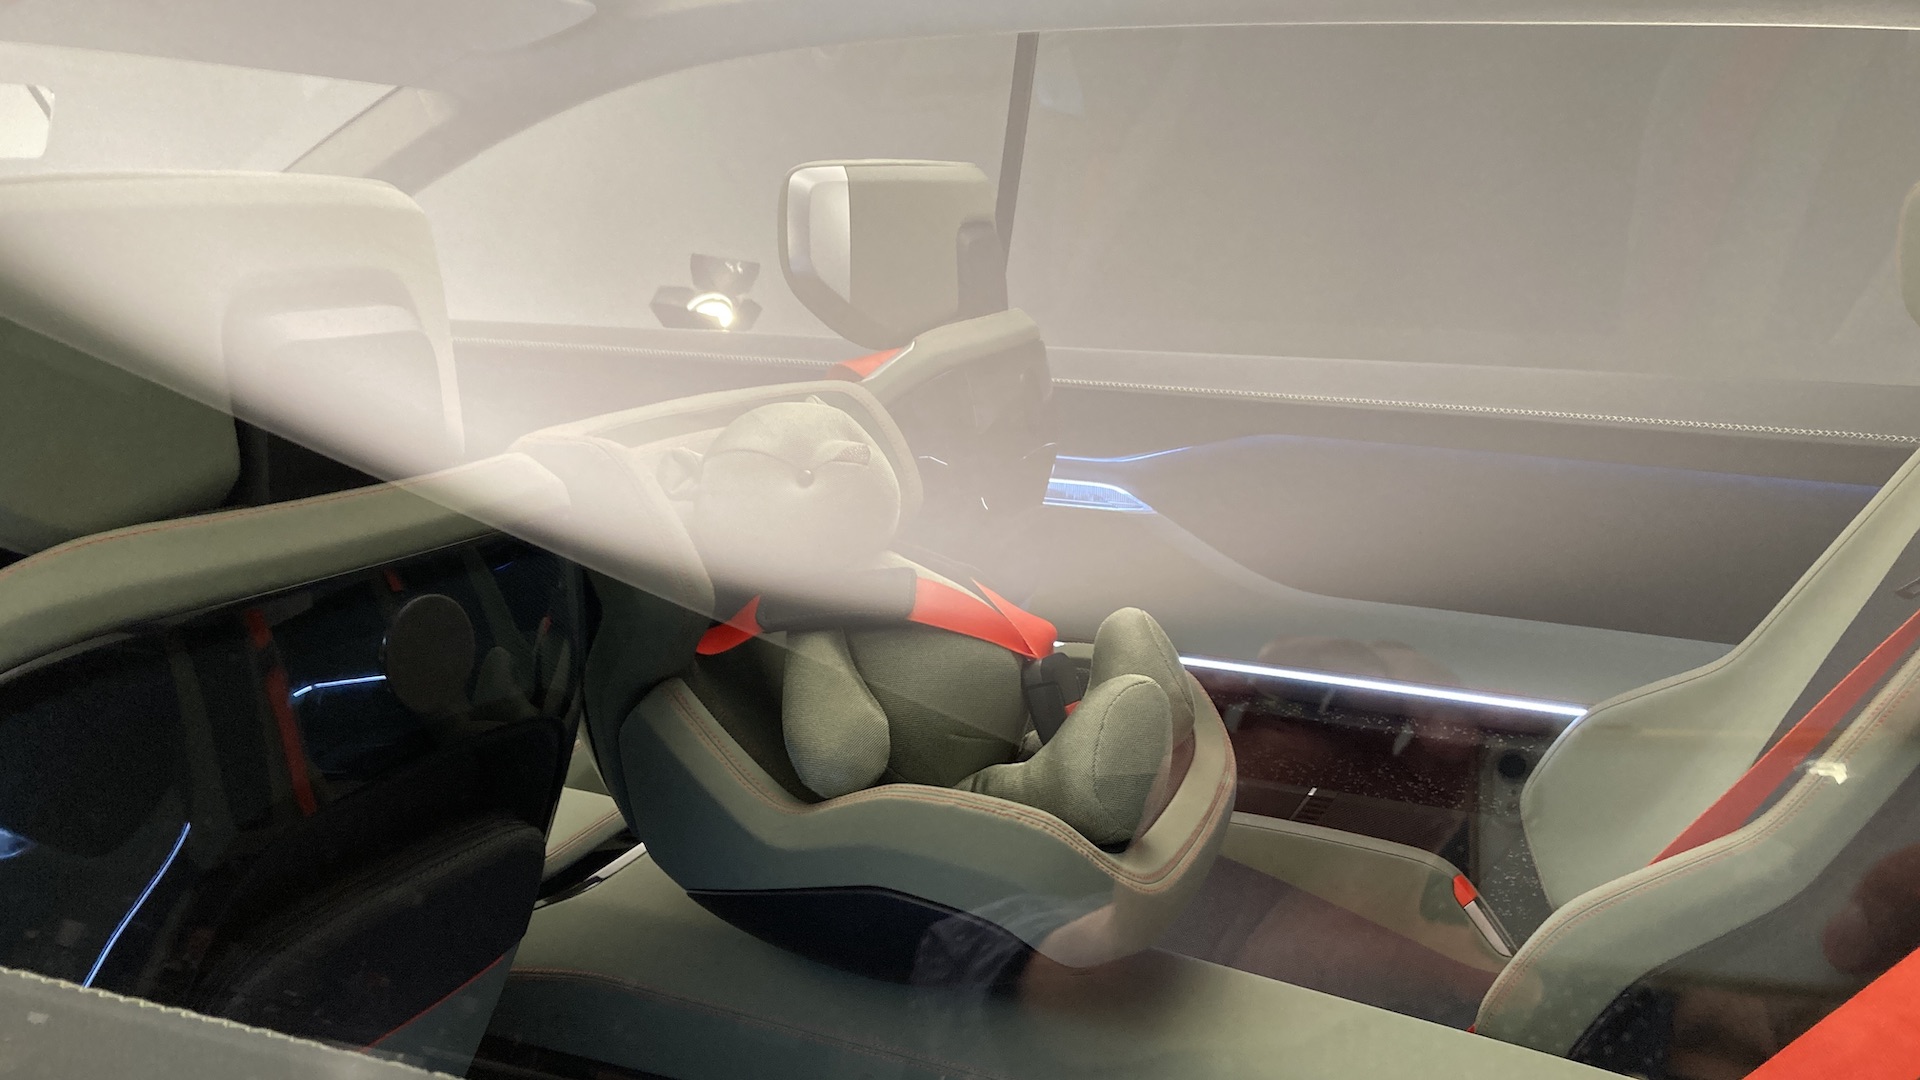 Sedmimístný elektromobil Škoda Vision 7S - unikátní rozvržení interiéru